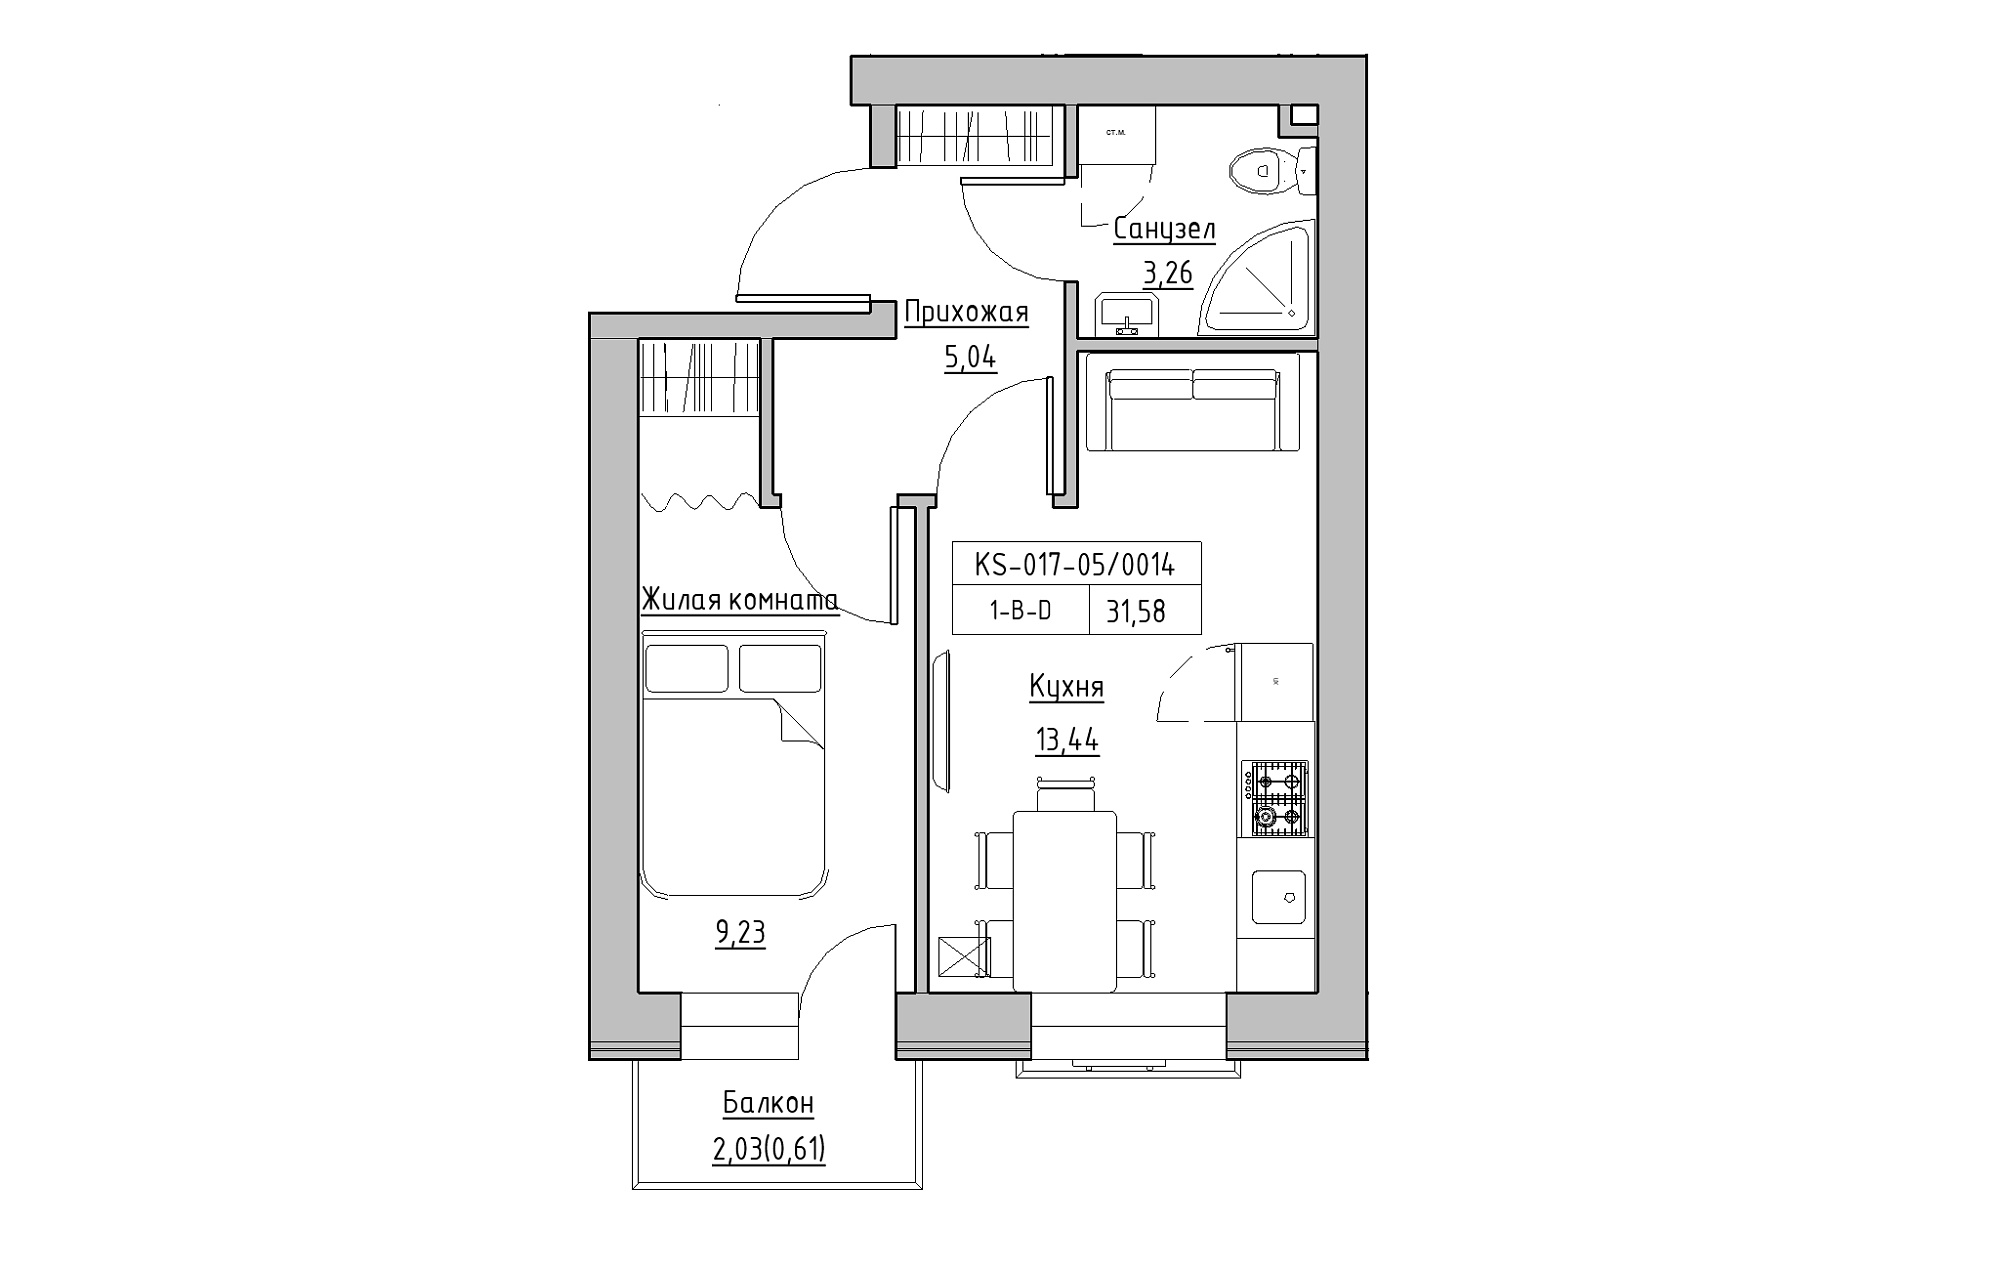 Планування 1-к квартира площею 31.58м2, KS-017-05/0014.